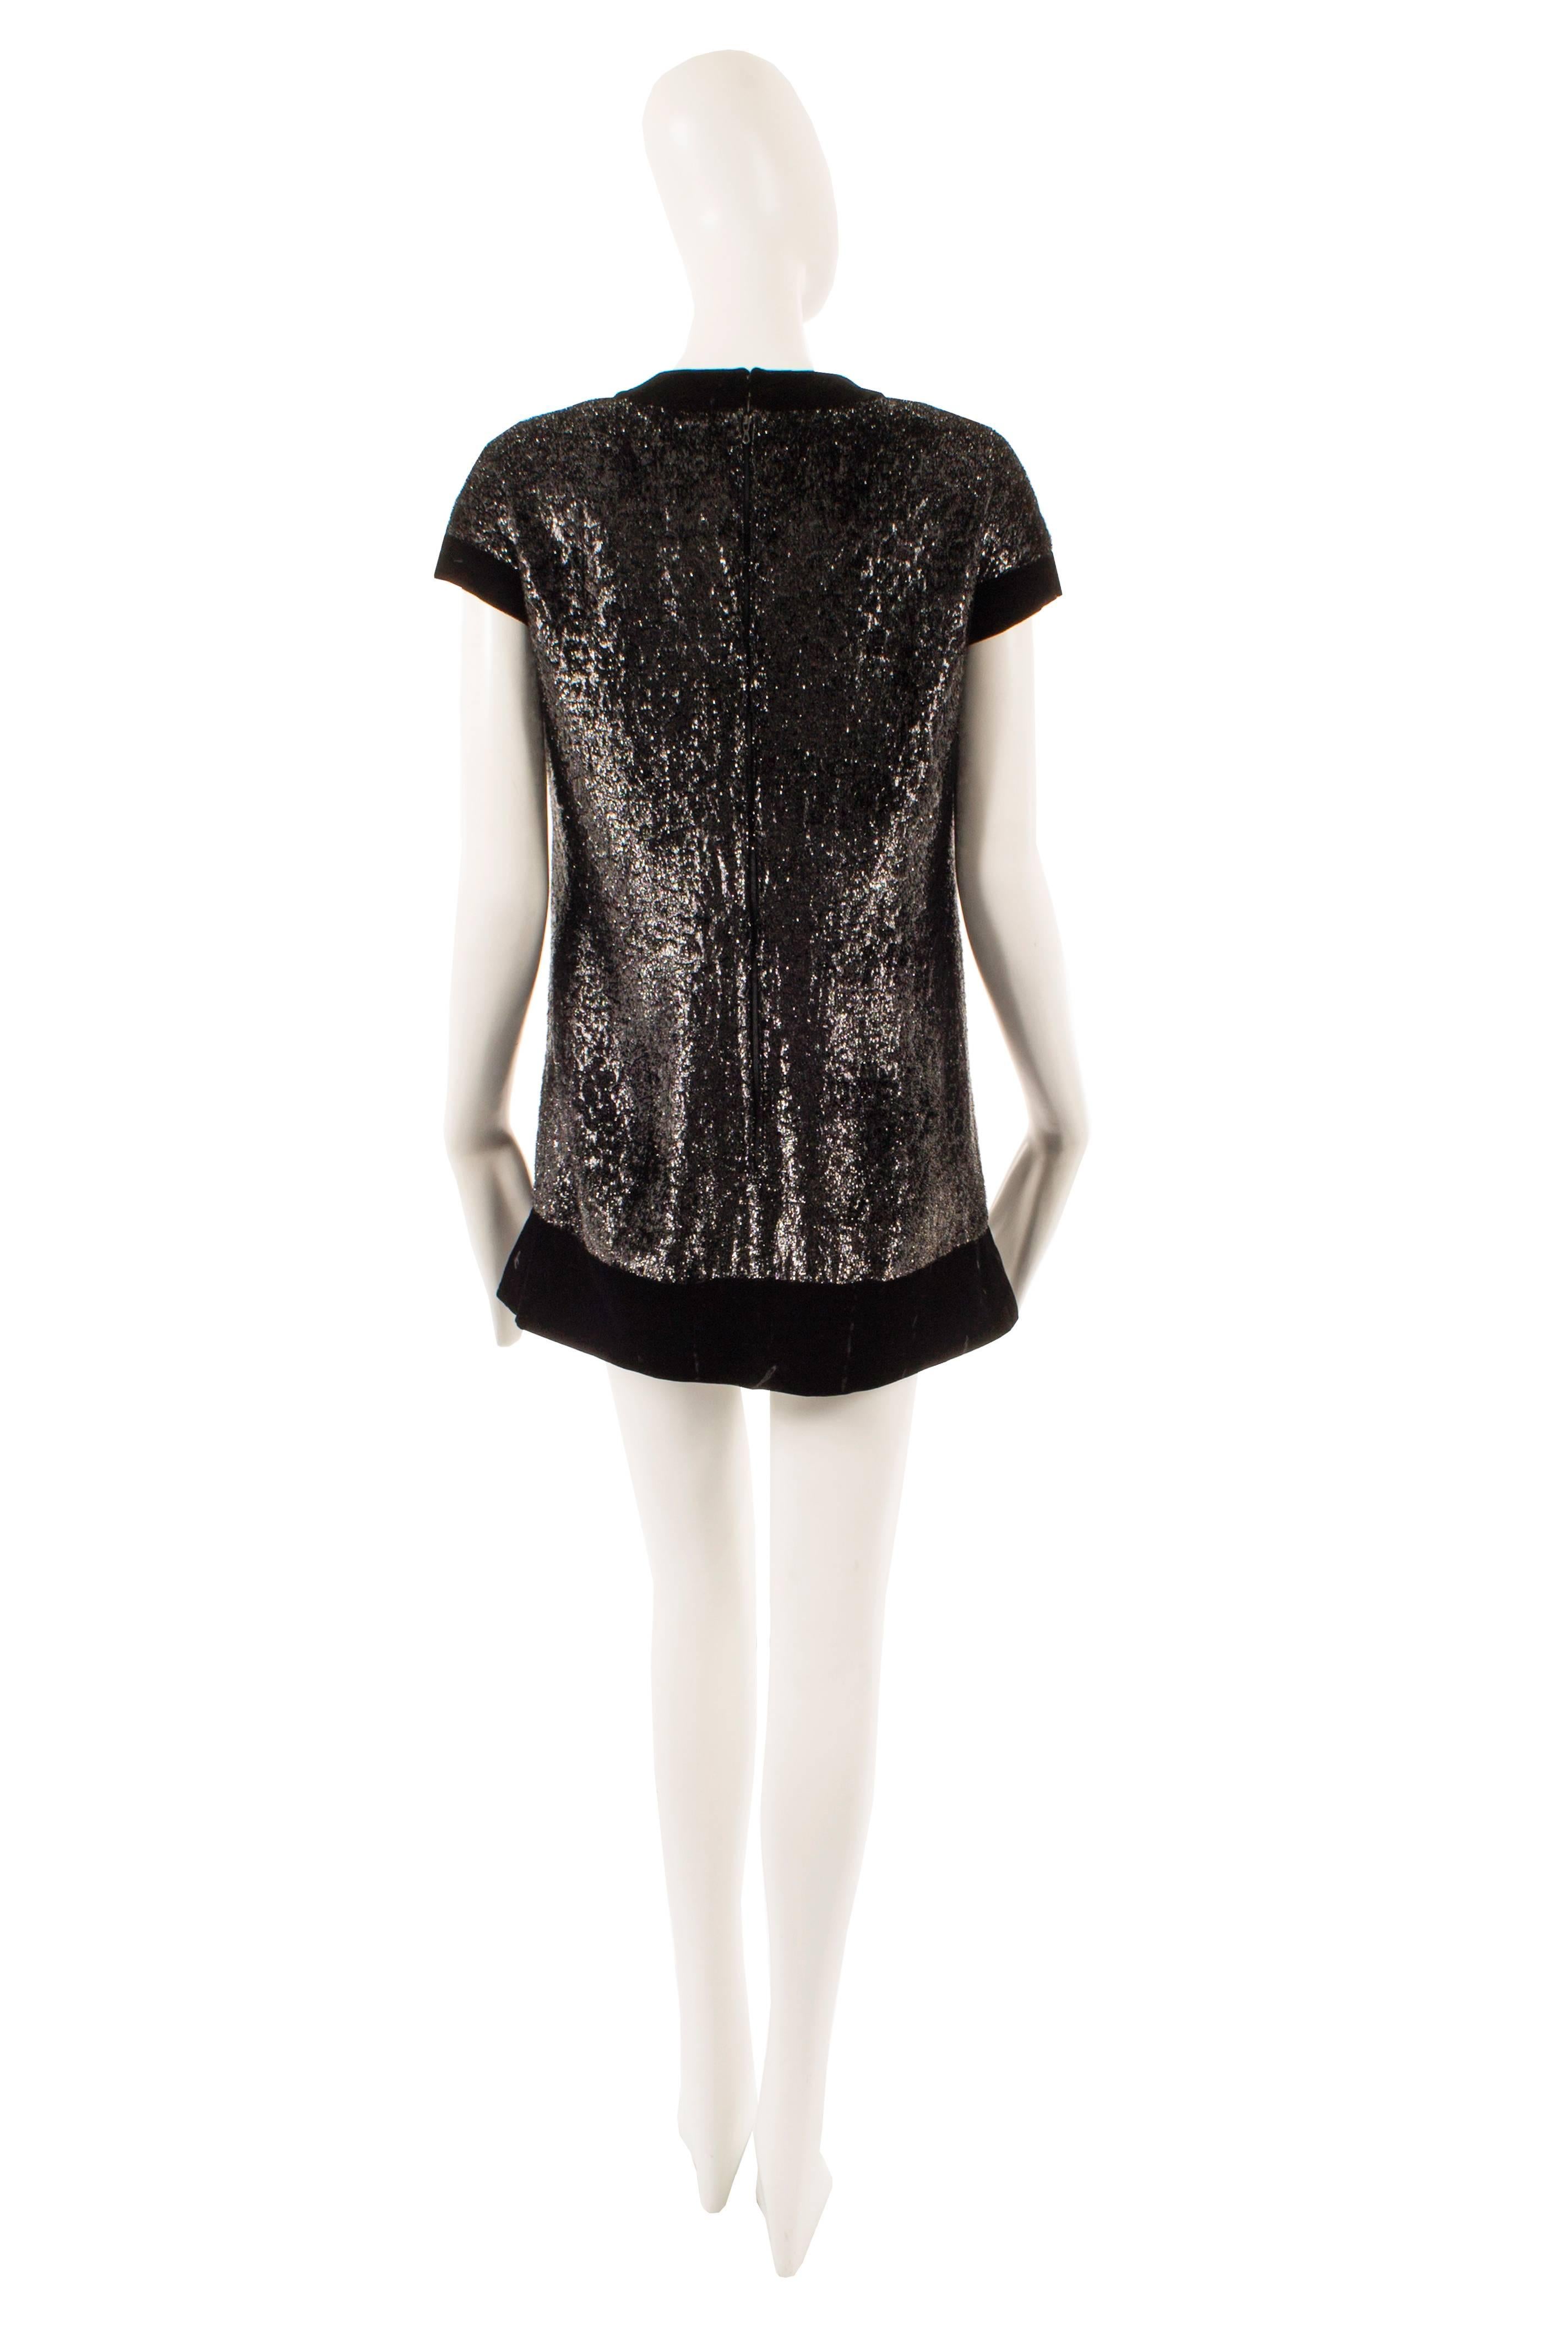 Pierre Cardin black mini dress, circa 1968 In Excellent Condition For Sale In London, GB